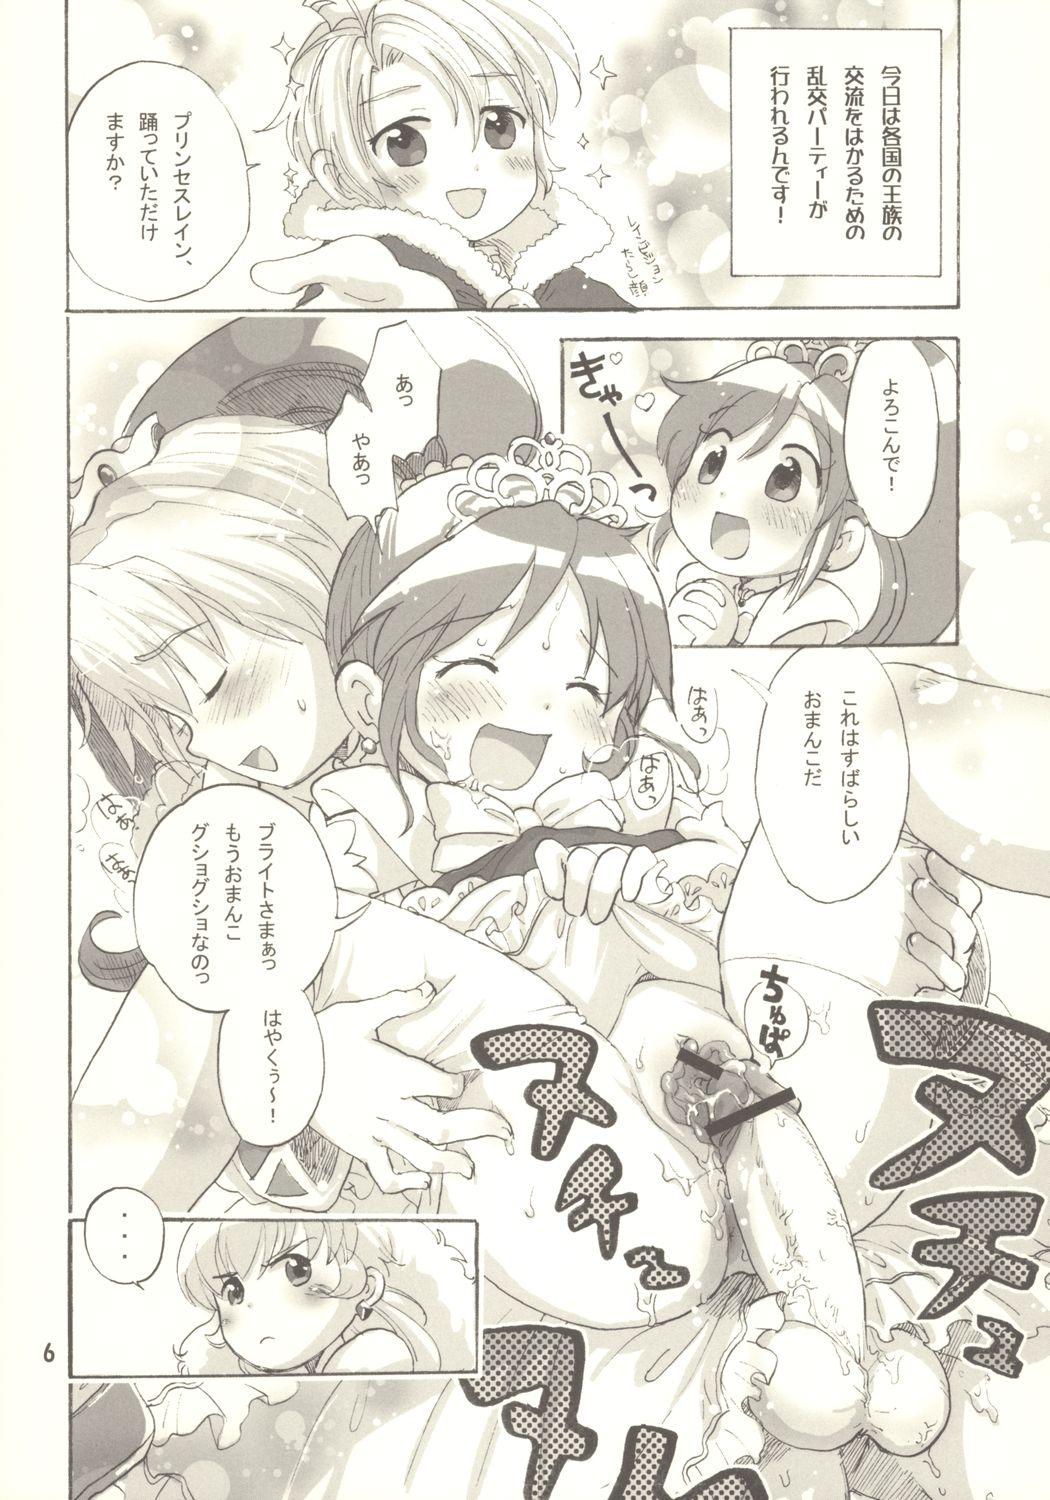 Assfingering Egao ni Nare - Please give me smiling face - Fushigiboshi no futagohime Licking Pussy - Page 5